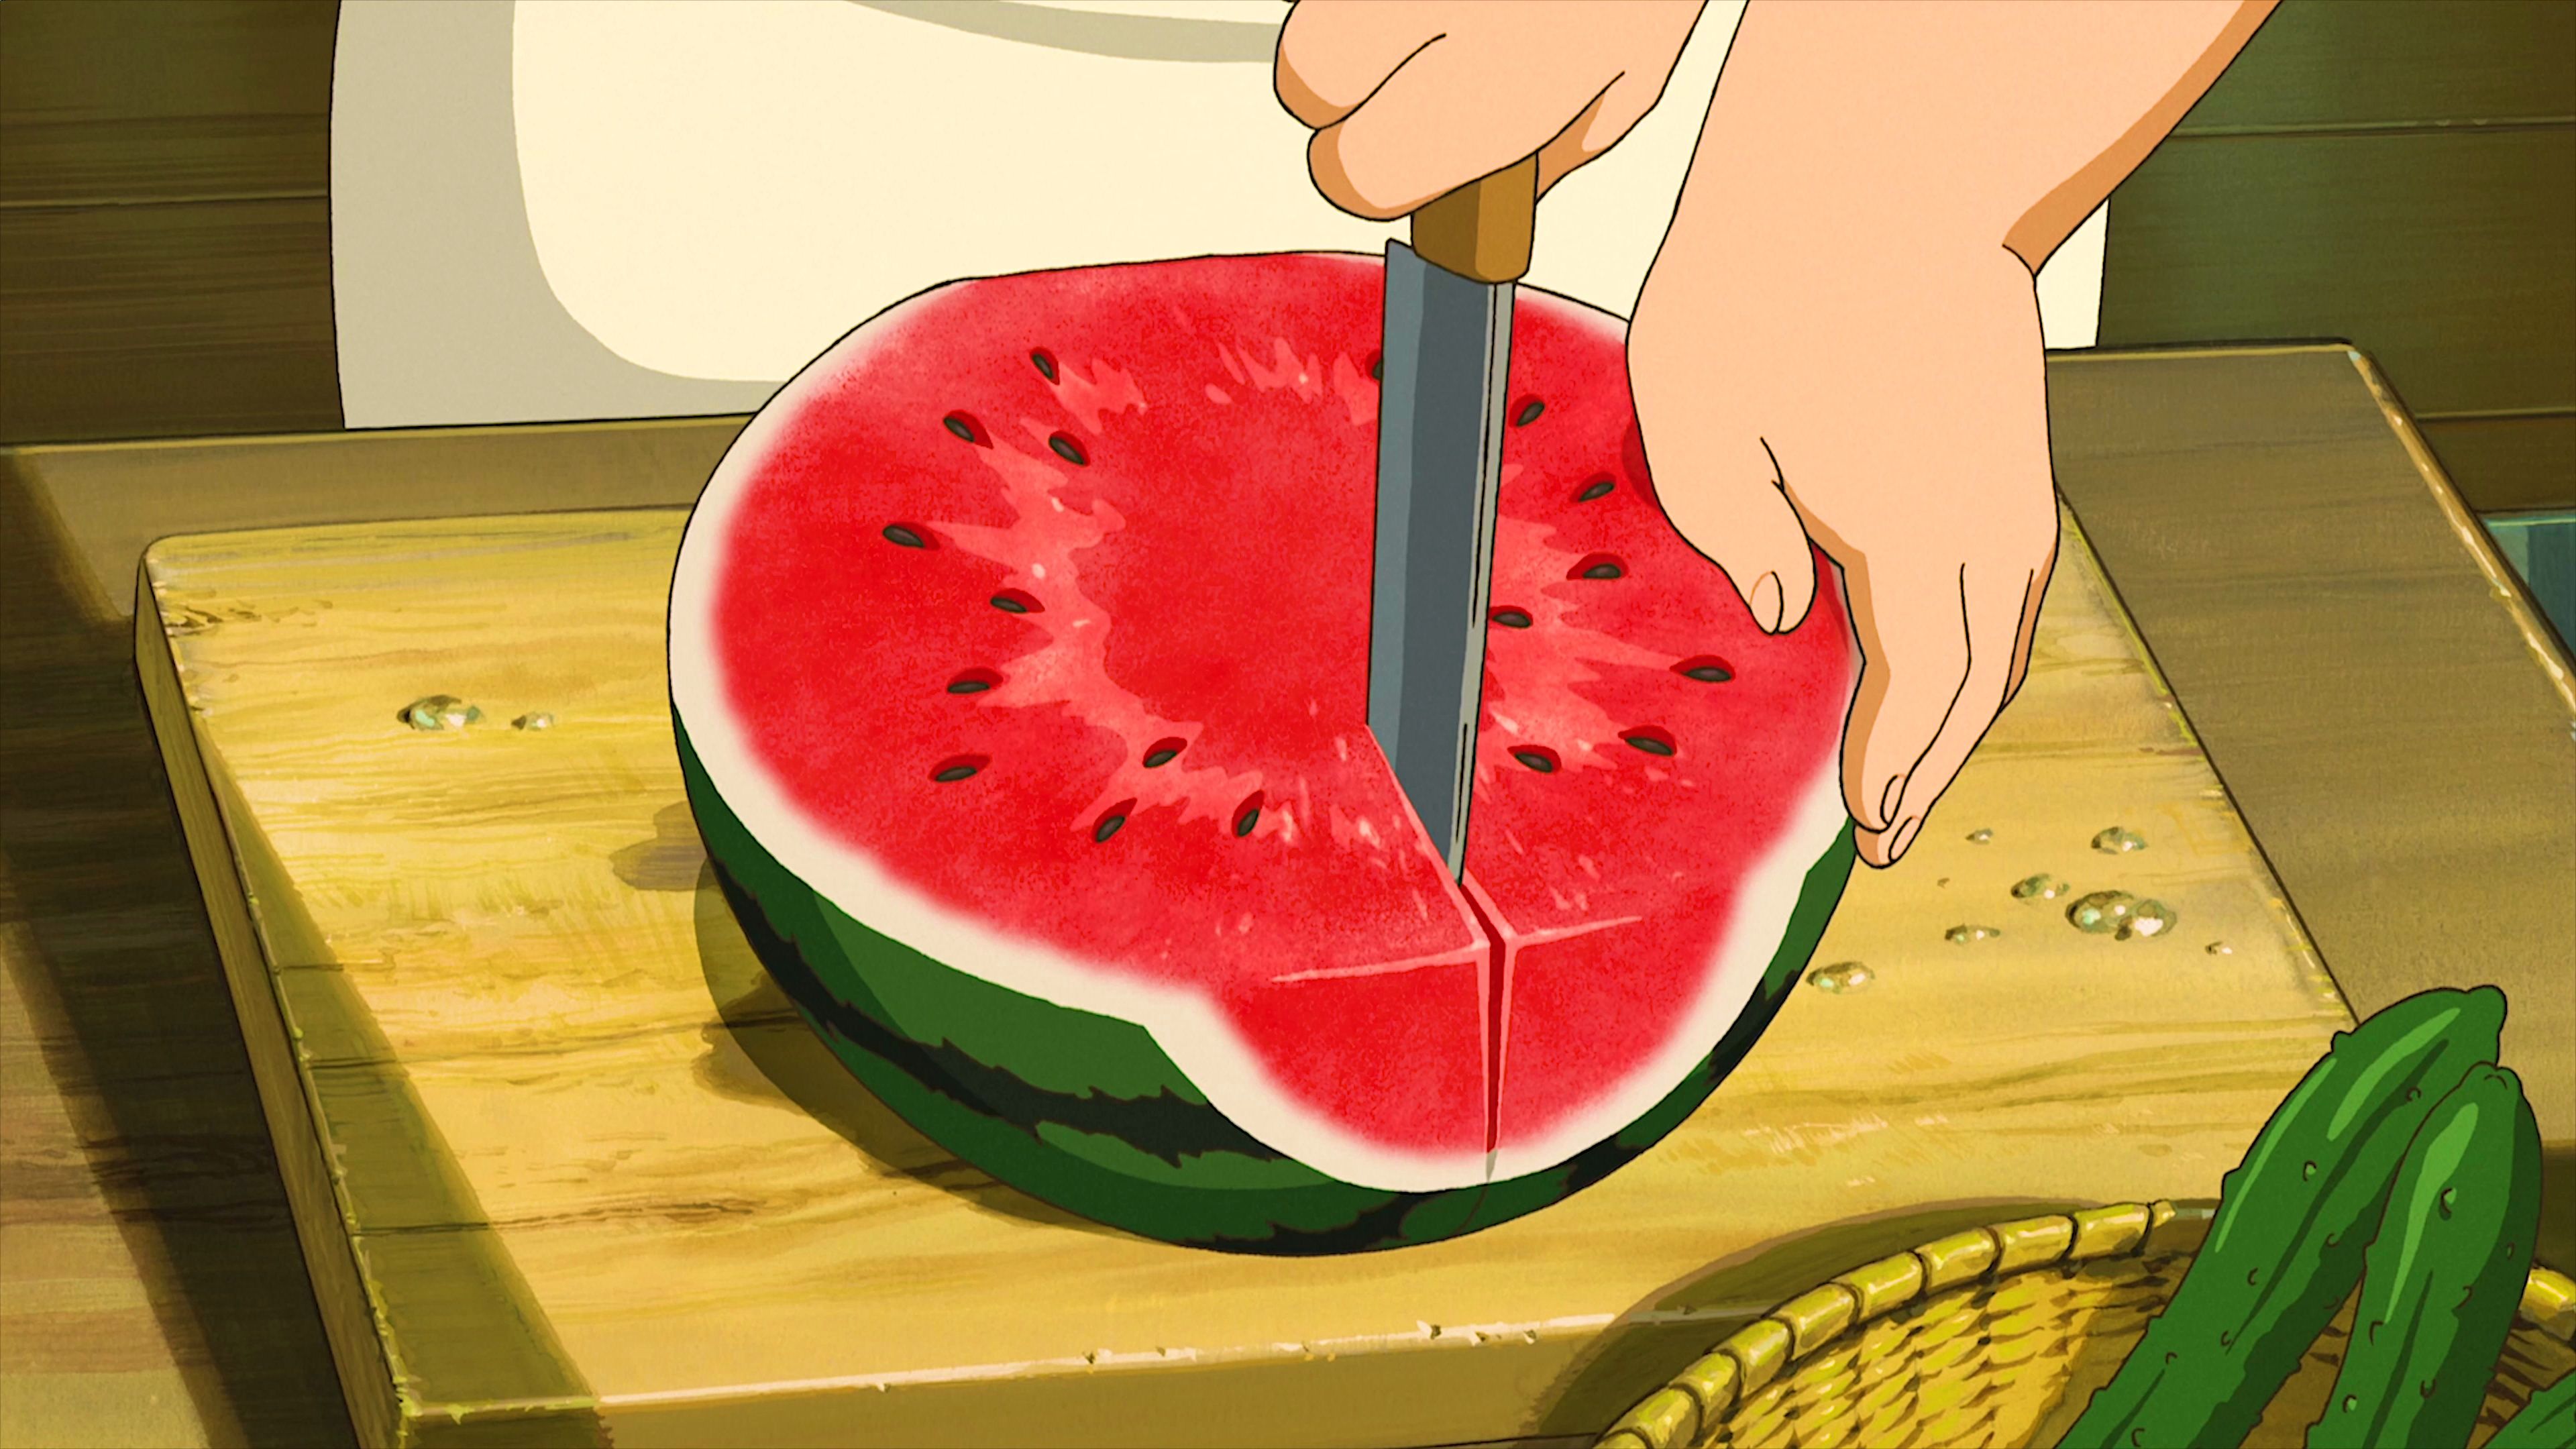 愿即将到来的夏天，如宫崎骏动画般美好如初！